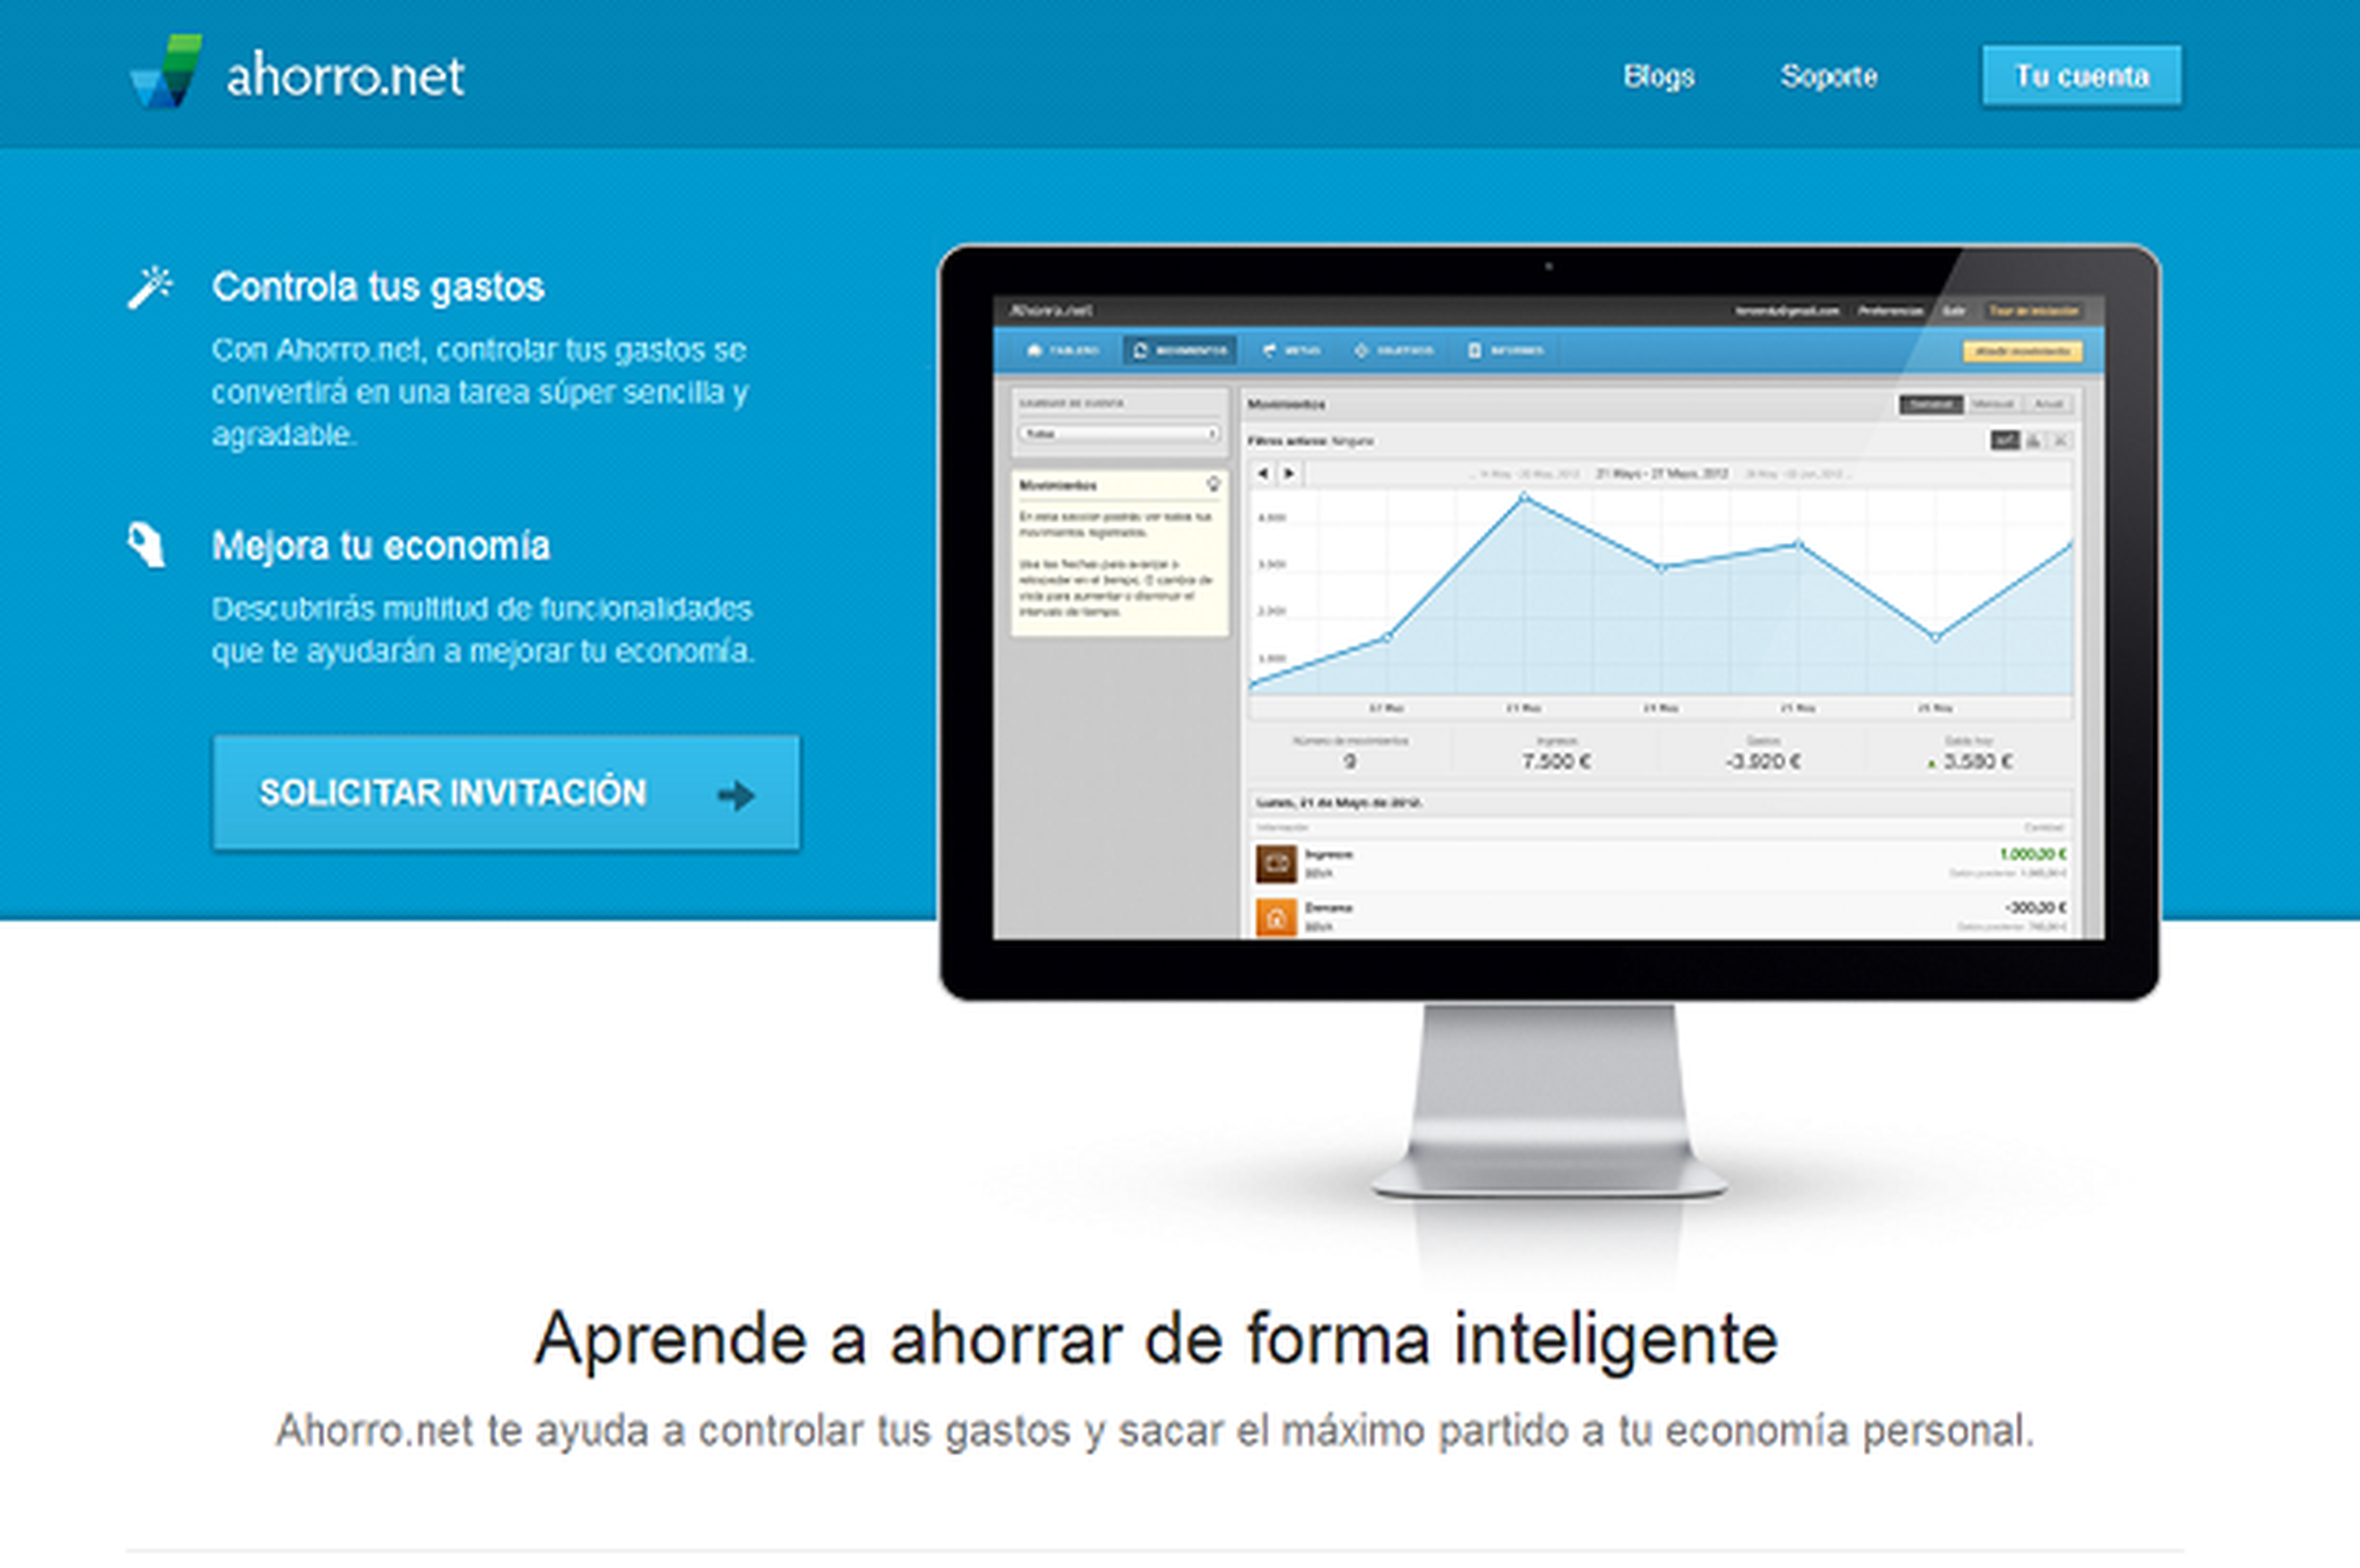 Ahorro.net es una startup española que te permite controlar tus gastos online.